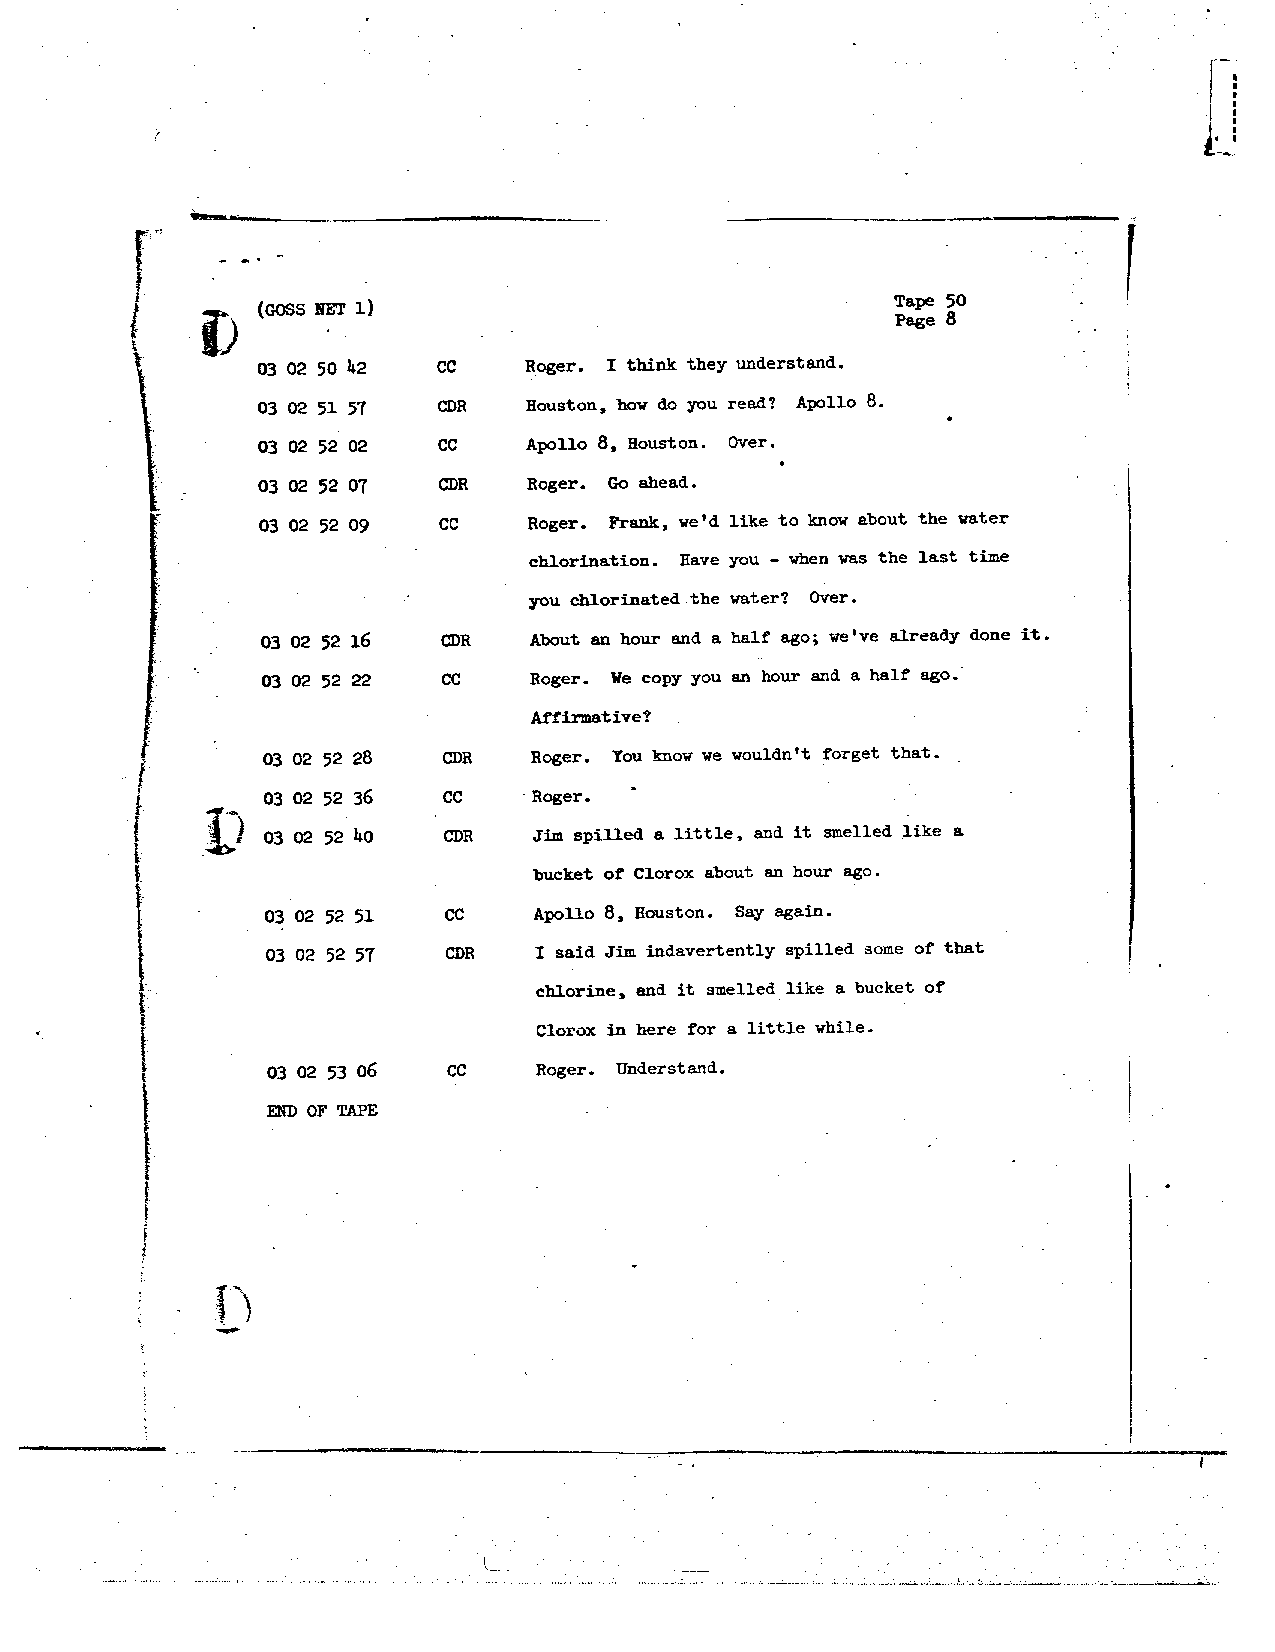 Page 400 of Apollo 8’s original transcript